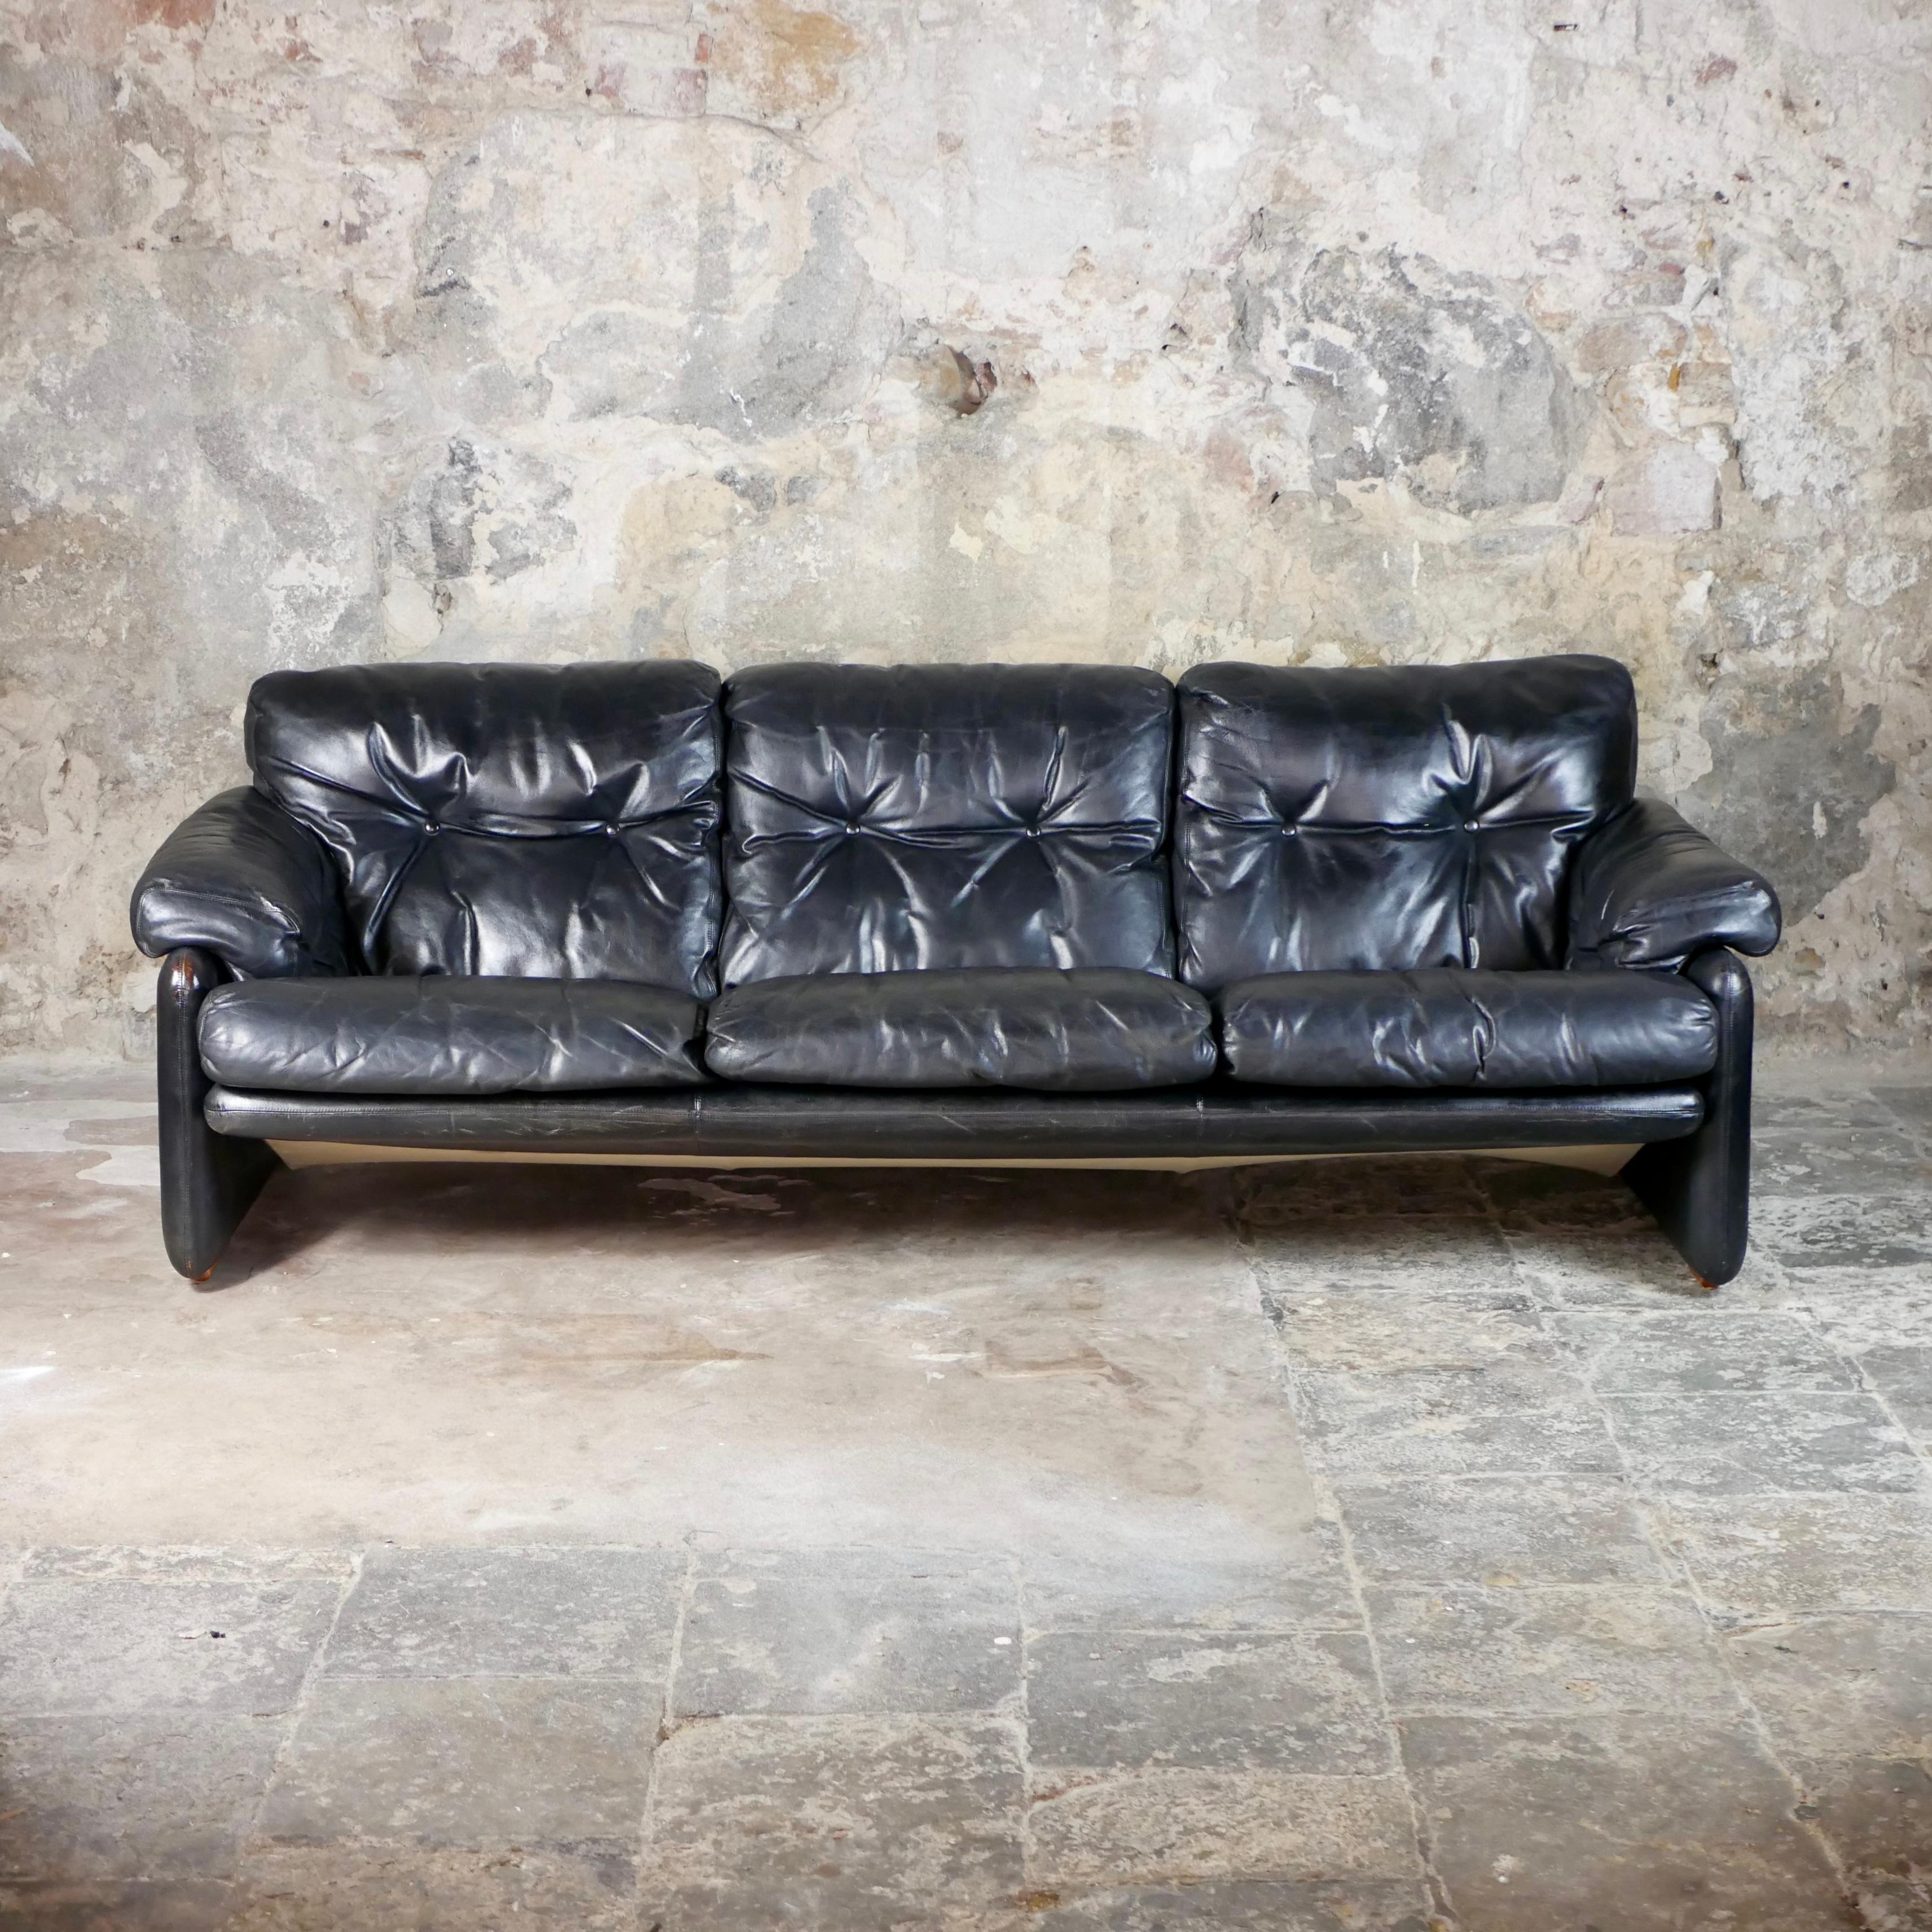 Atemberaubendes Coronado-Sofa aus schwarzem Leder, hergestellt in den 1960er Jahren von C&B Italia (später B&B Italia), entworfen von Afra & Tobia Scarpa.
Erste Ausgabe, originaler schwarzer Lederbezug. 3 Plätze.
Guter Zustand, wenige Spuren der